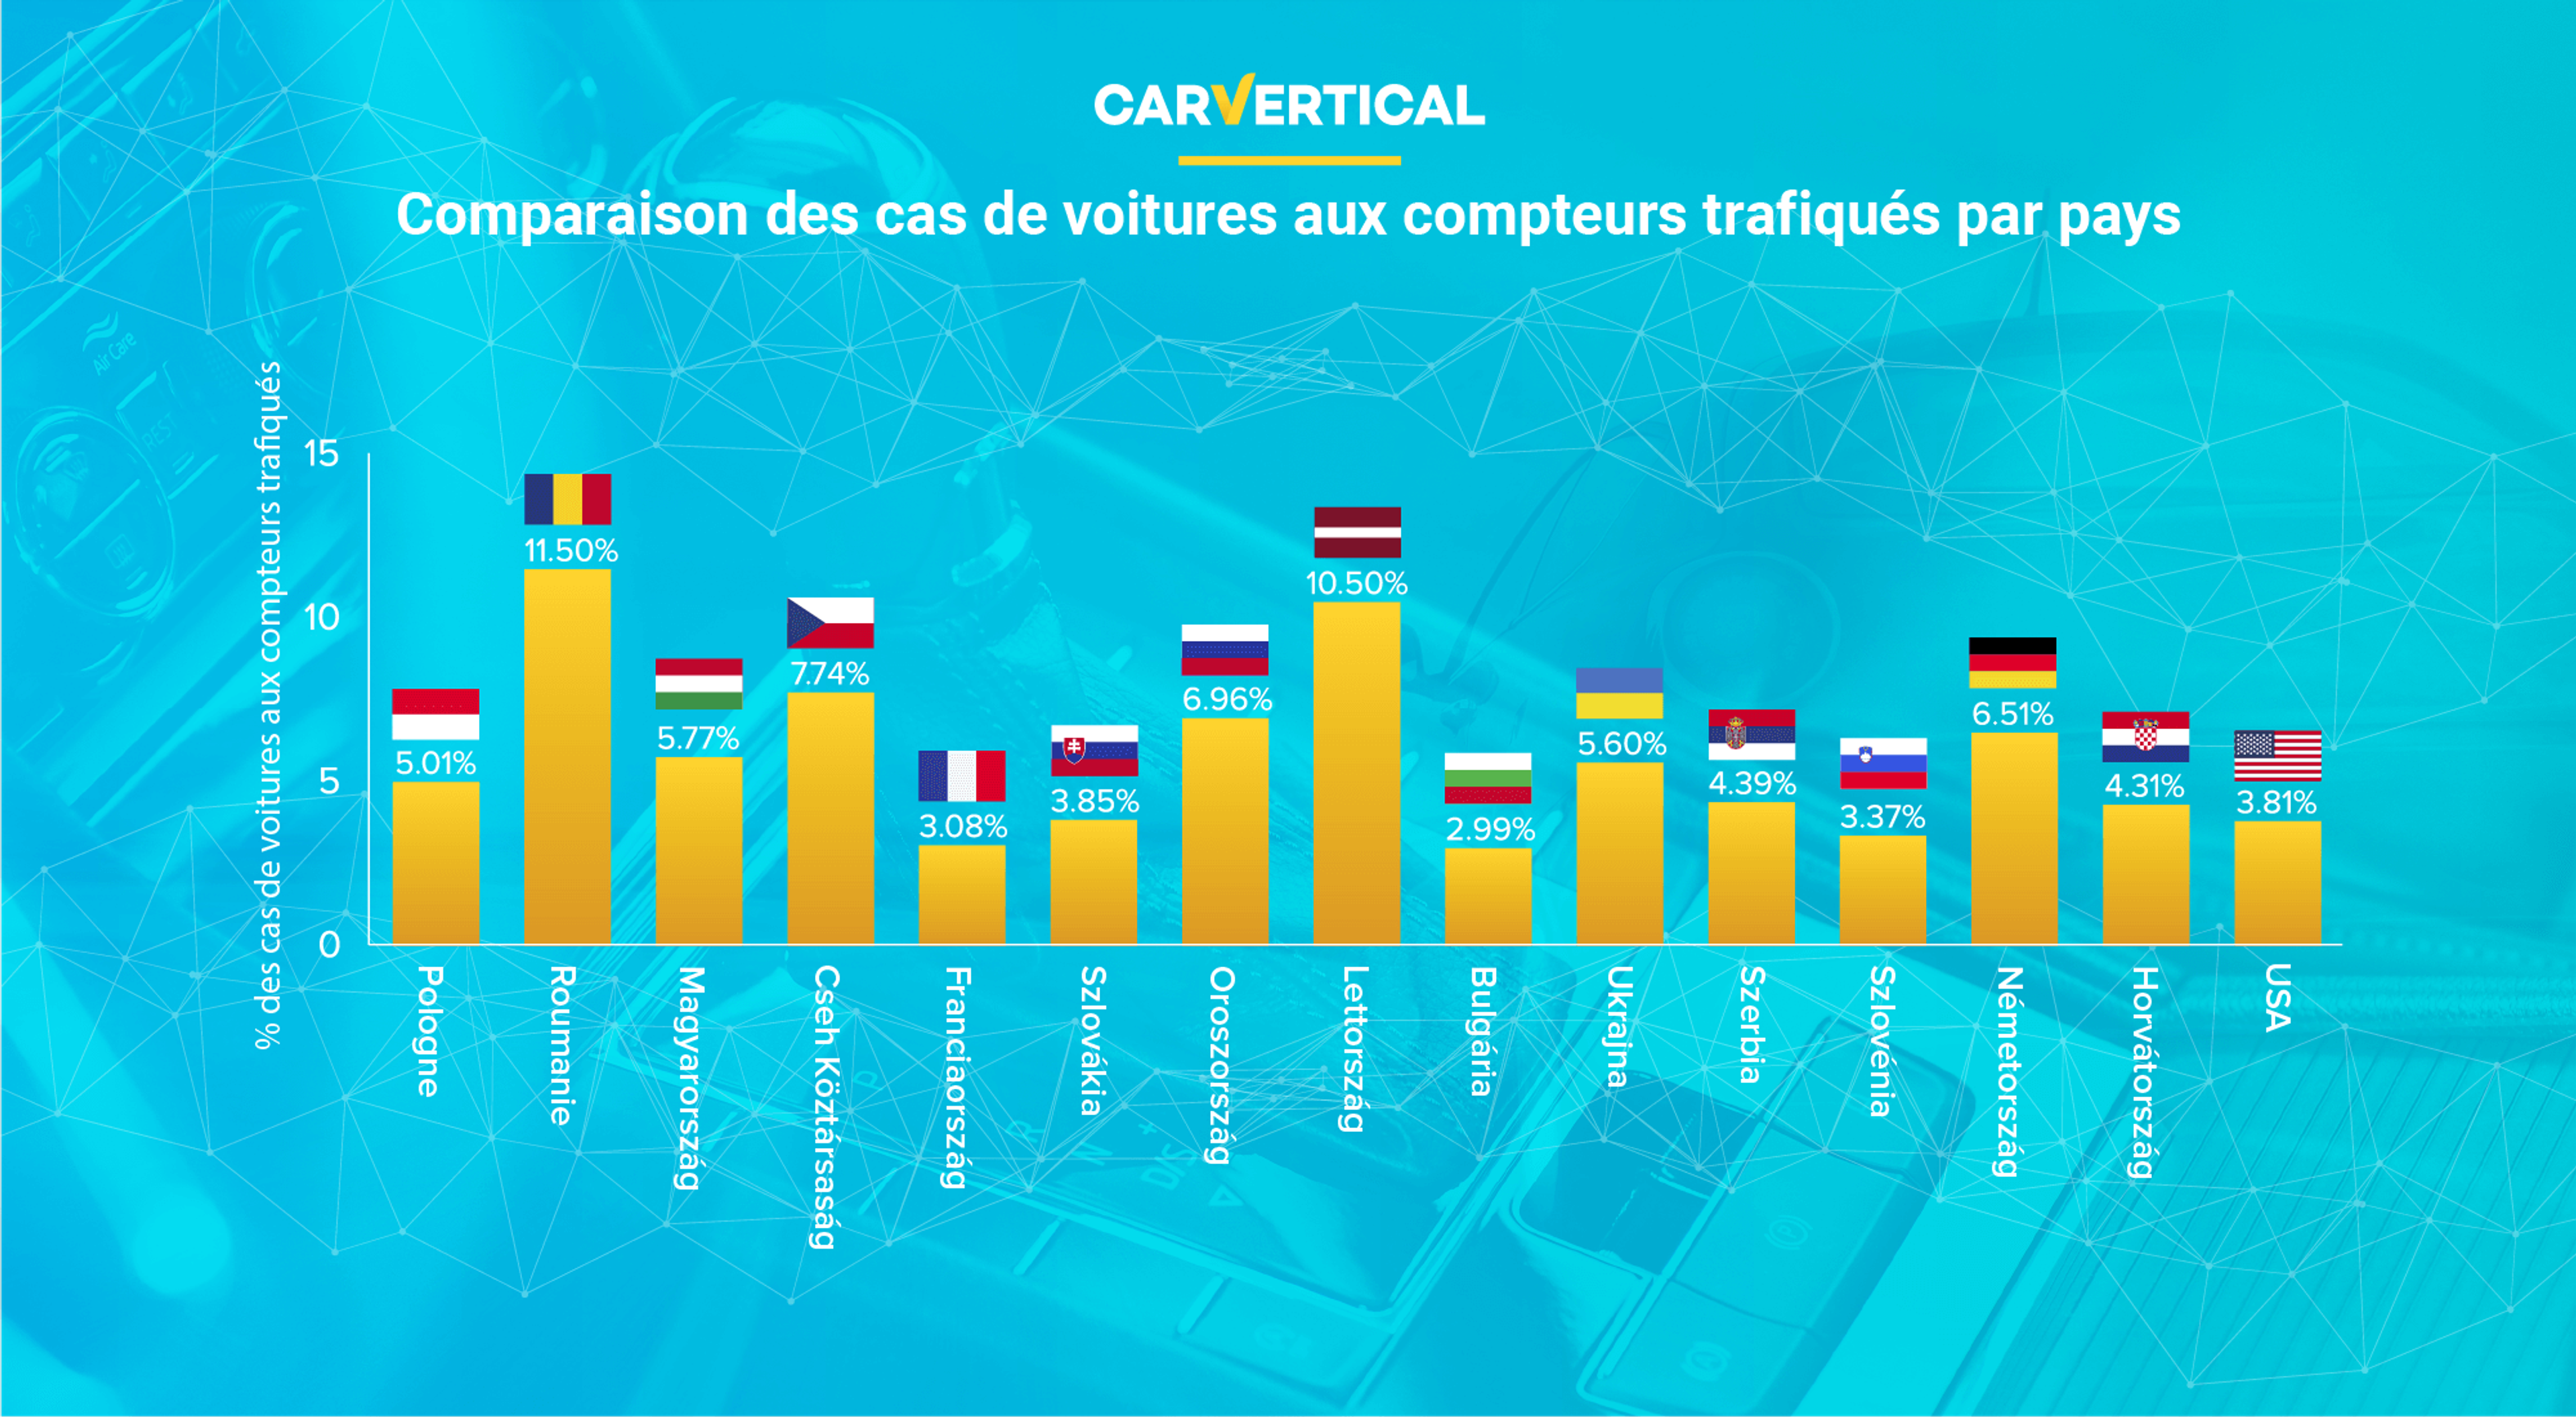 Comparaison des cas de voitures trafiqués aux compteurs par pays